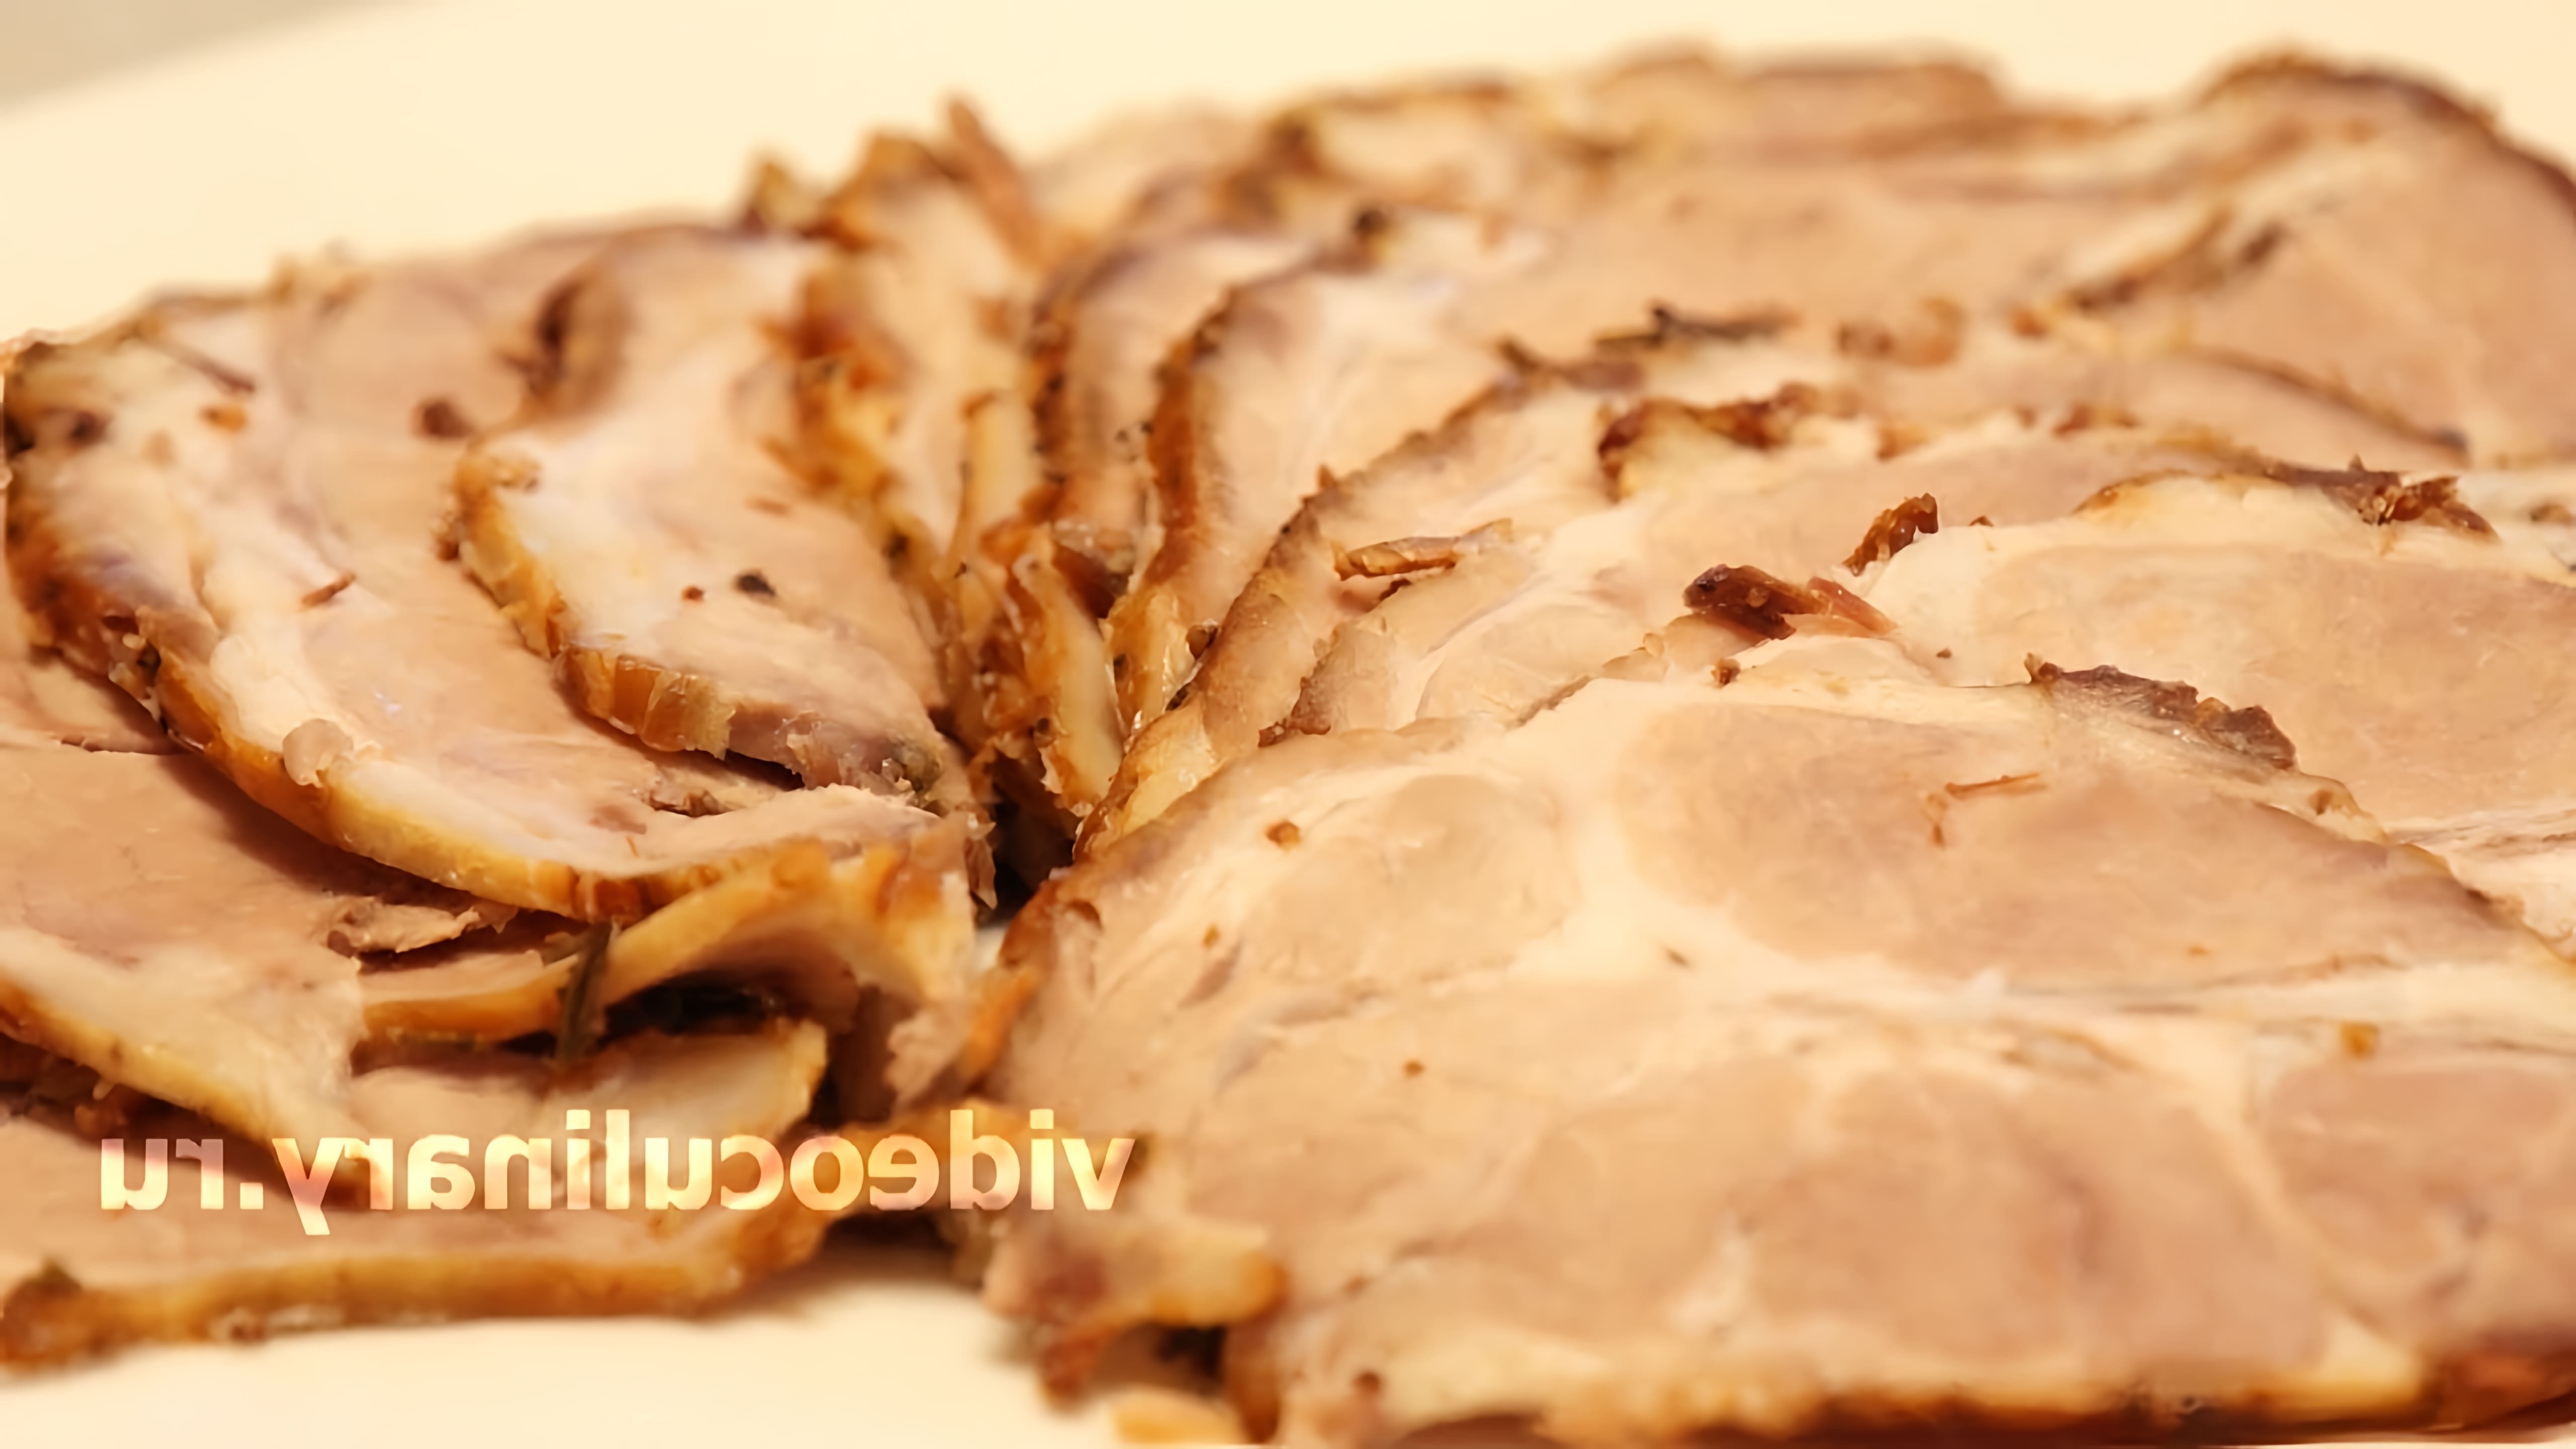 В этом видео демонстрируется рецепт приготовления домашней буженины из свиной шеи